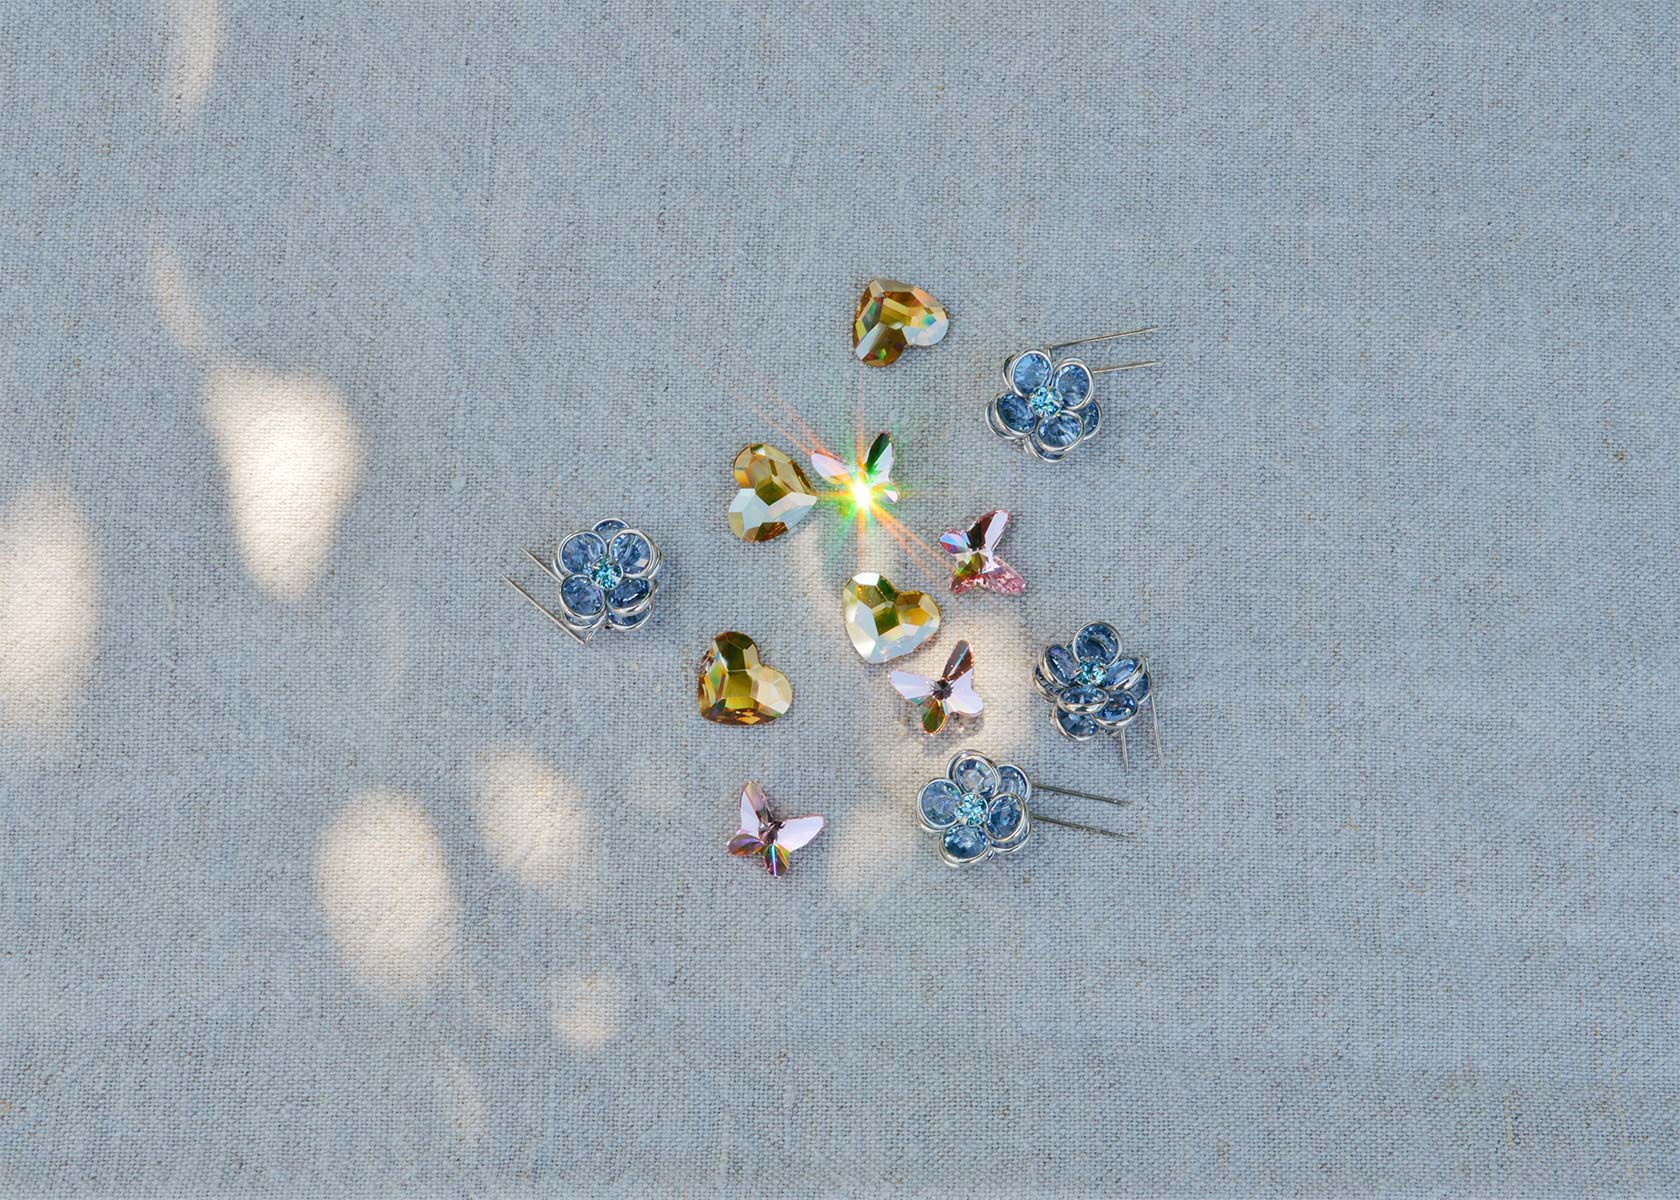 Swarovski Kristalle zum Blumenkranz binden